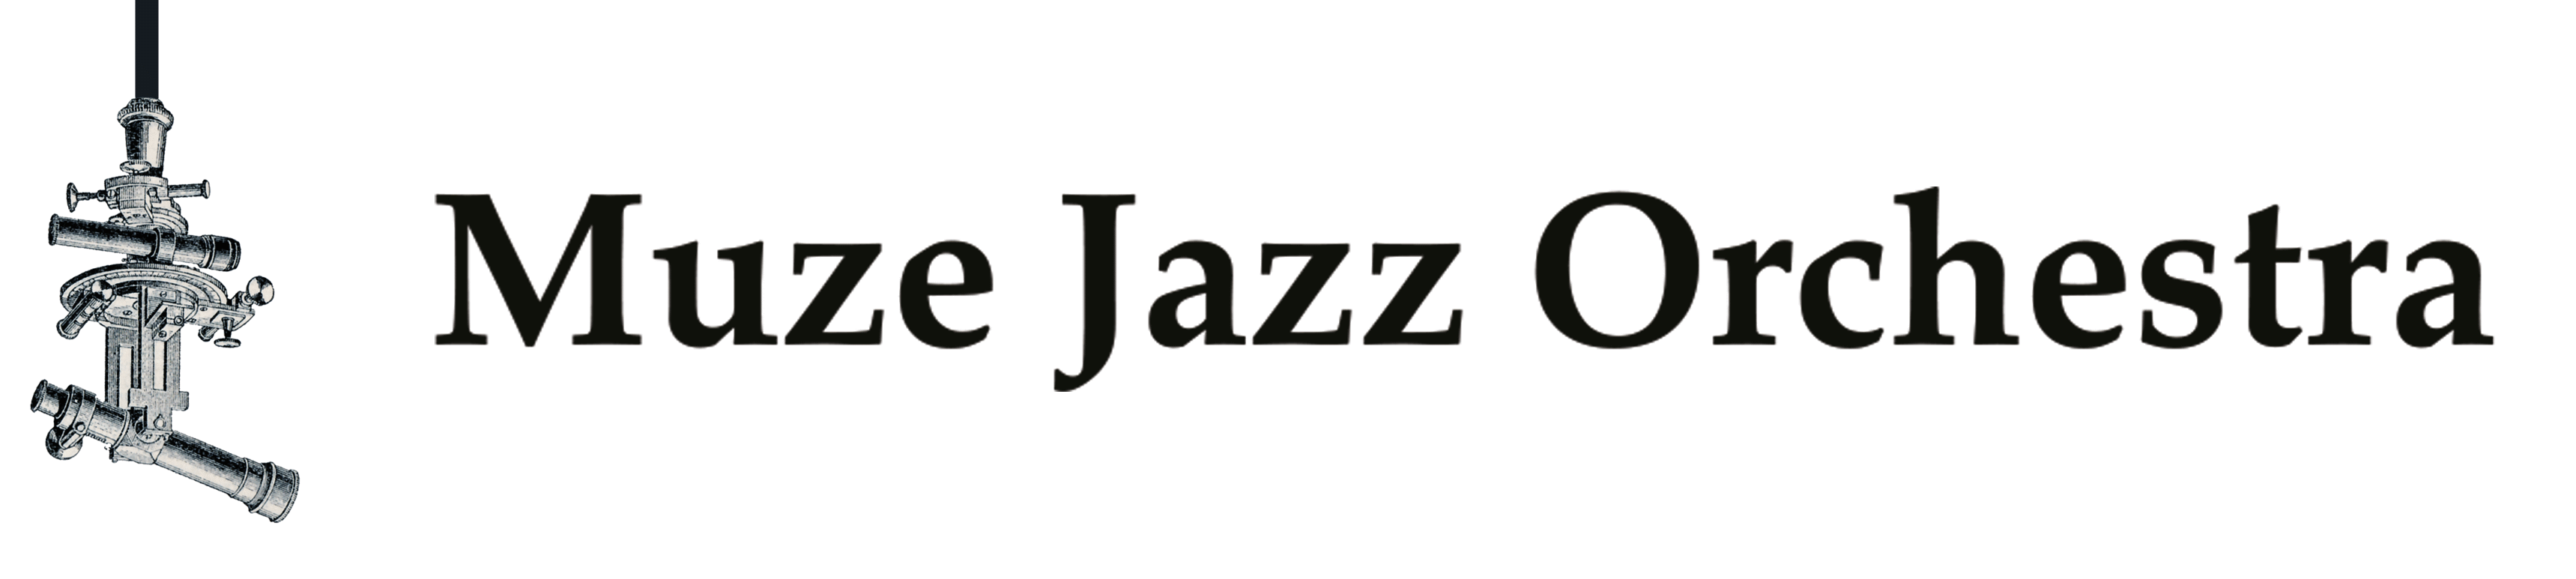 Muze Jazz Orchestra